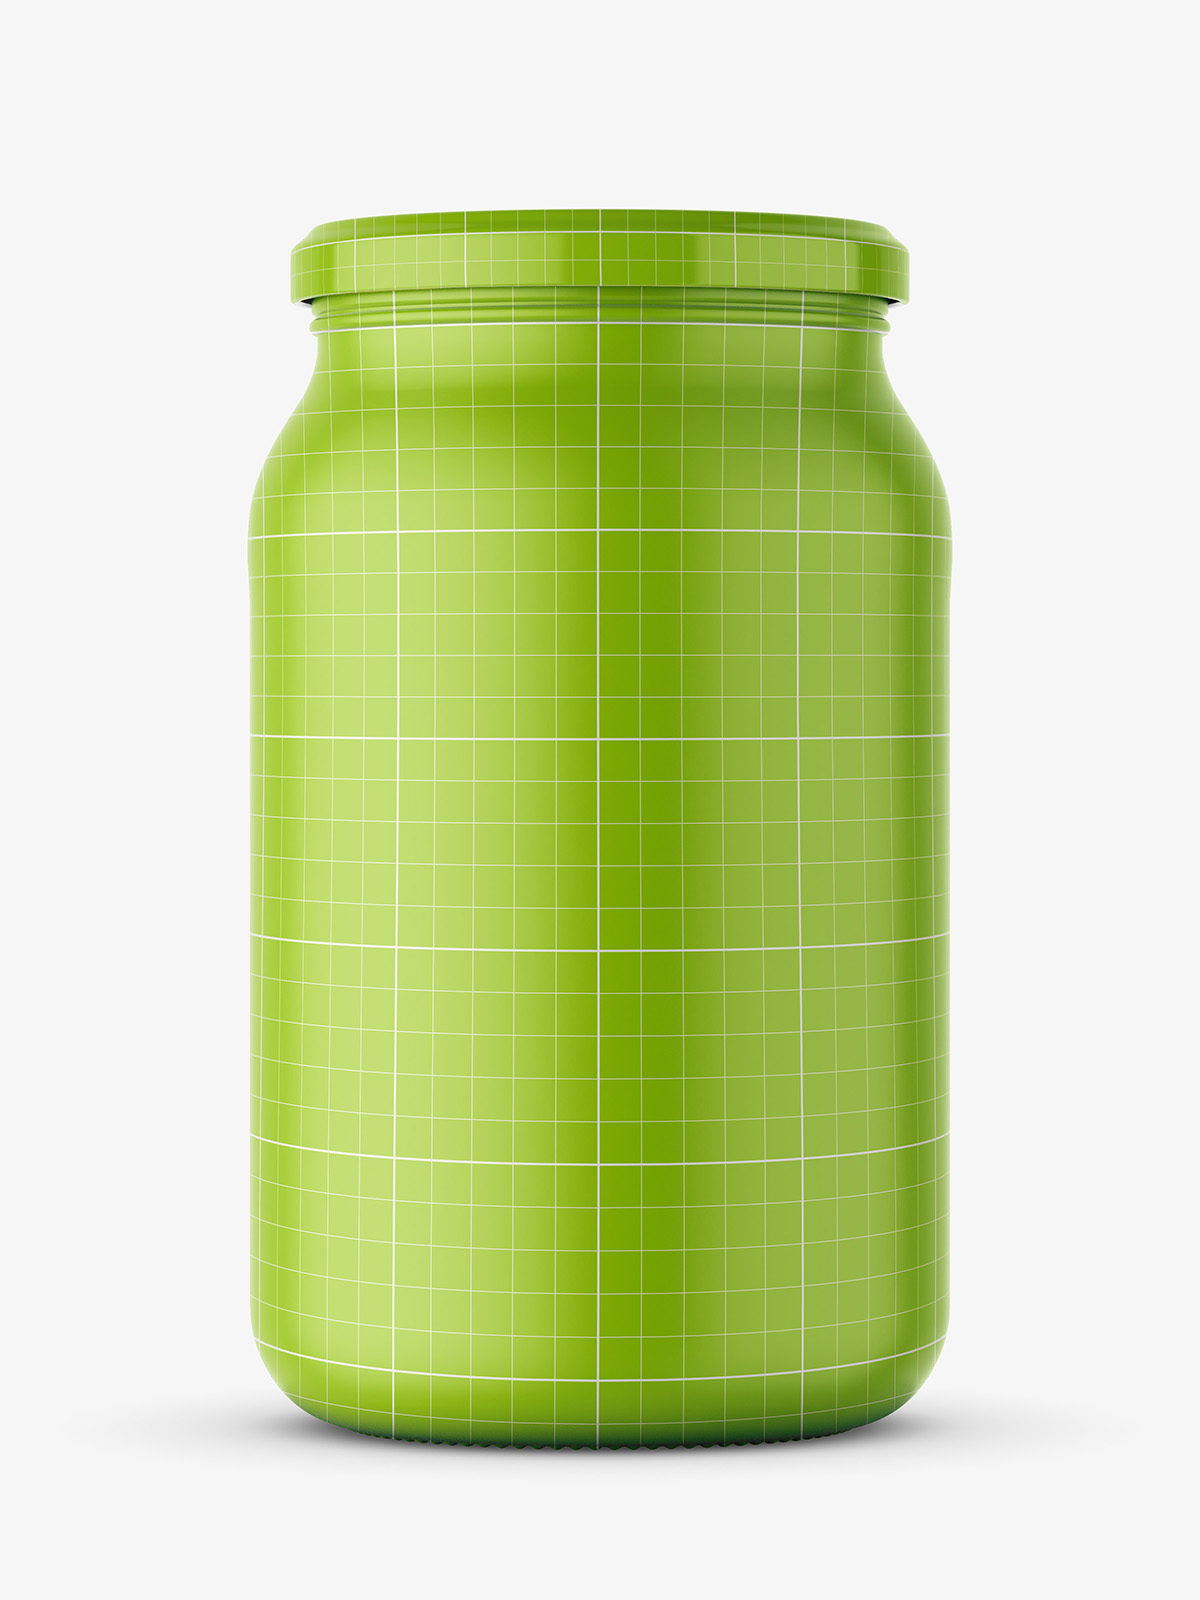 Large jar of olives mockup - Smarty Mockups